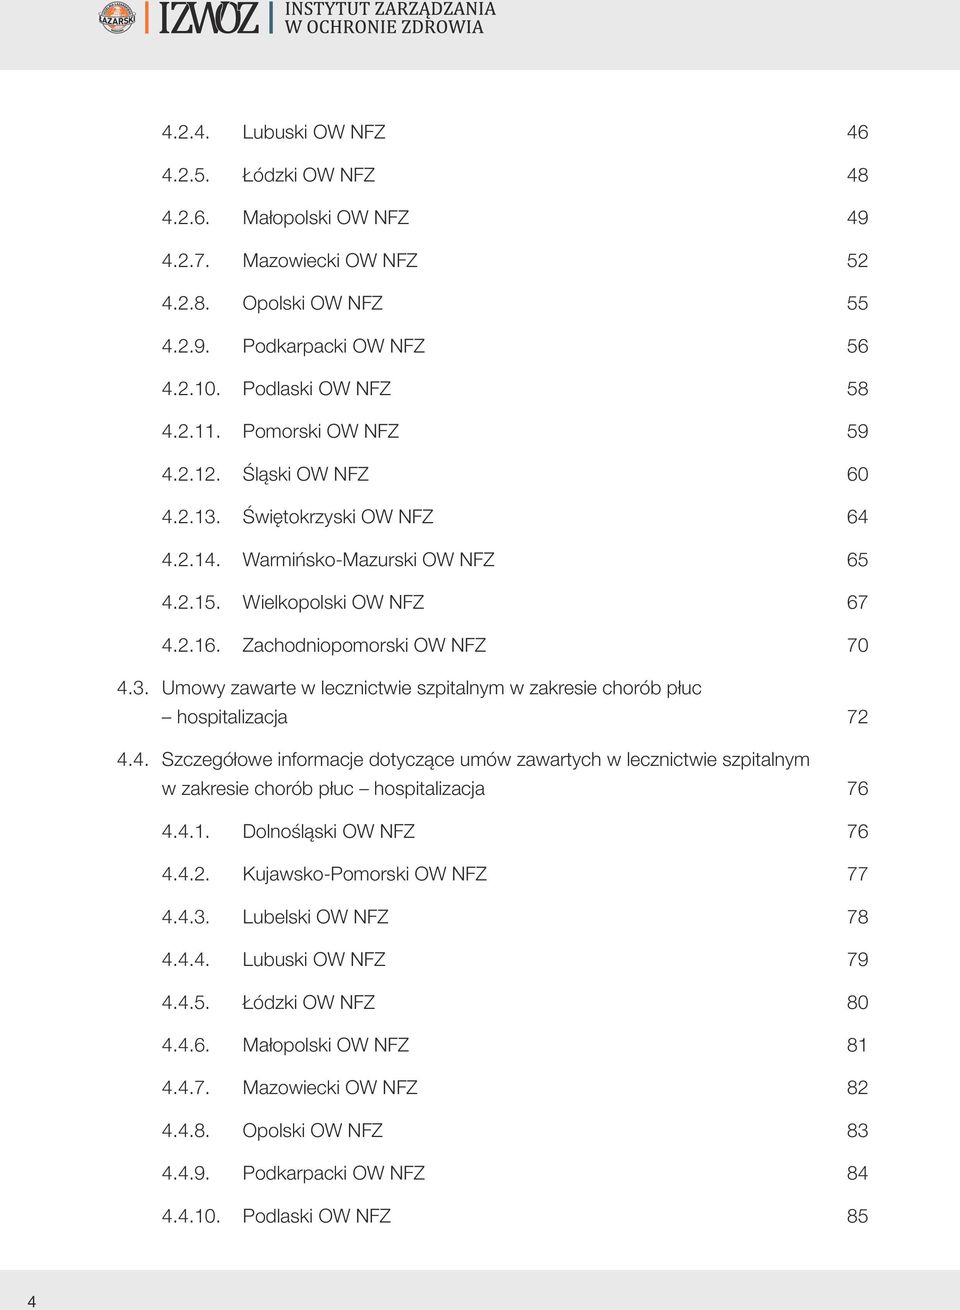 4. Szczegółowe informacje dotyczące umów zawartych w lecznictwie szpitalnym w zakresie chorób płuc hospitalizacja 76 4.4.1. Dolnośląski OW NFZ 76 4.4.2. Kujawsko-Pomorski OW NFZ 77 4.4.3.